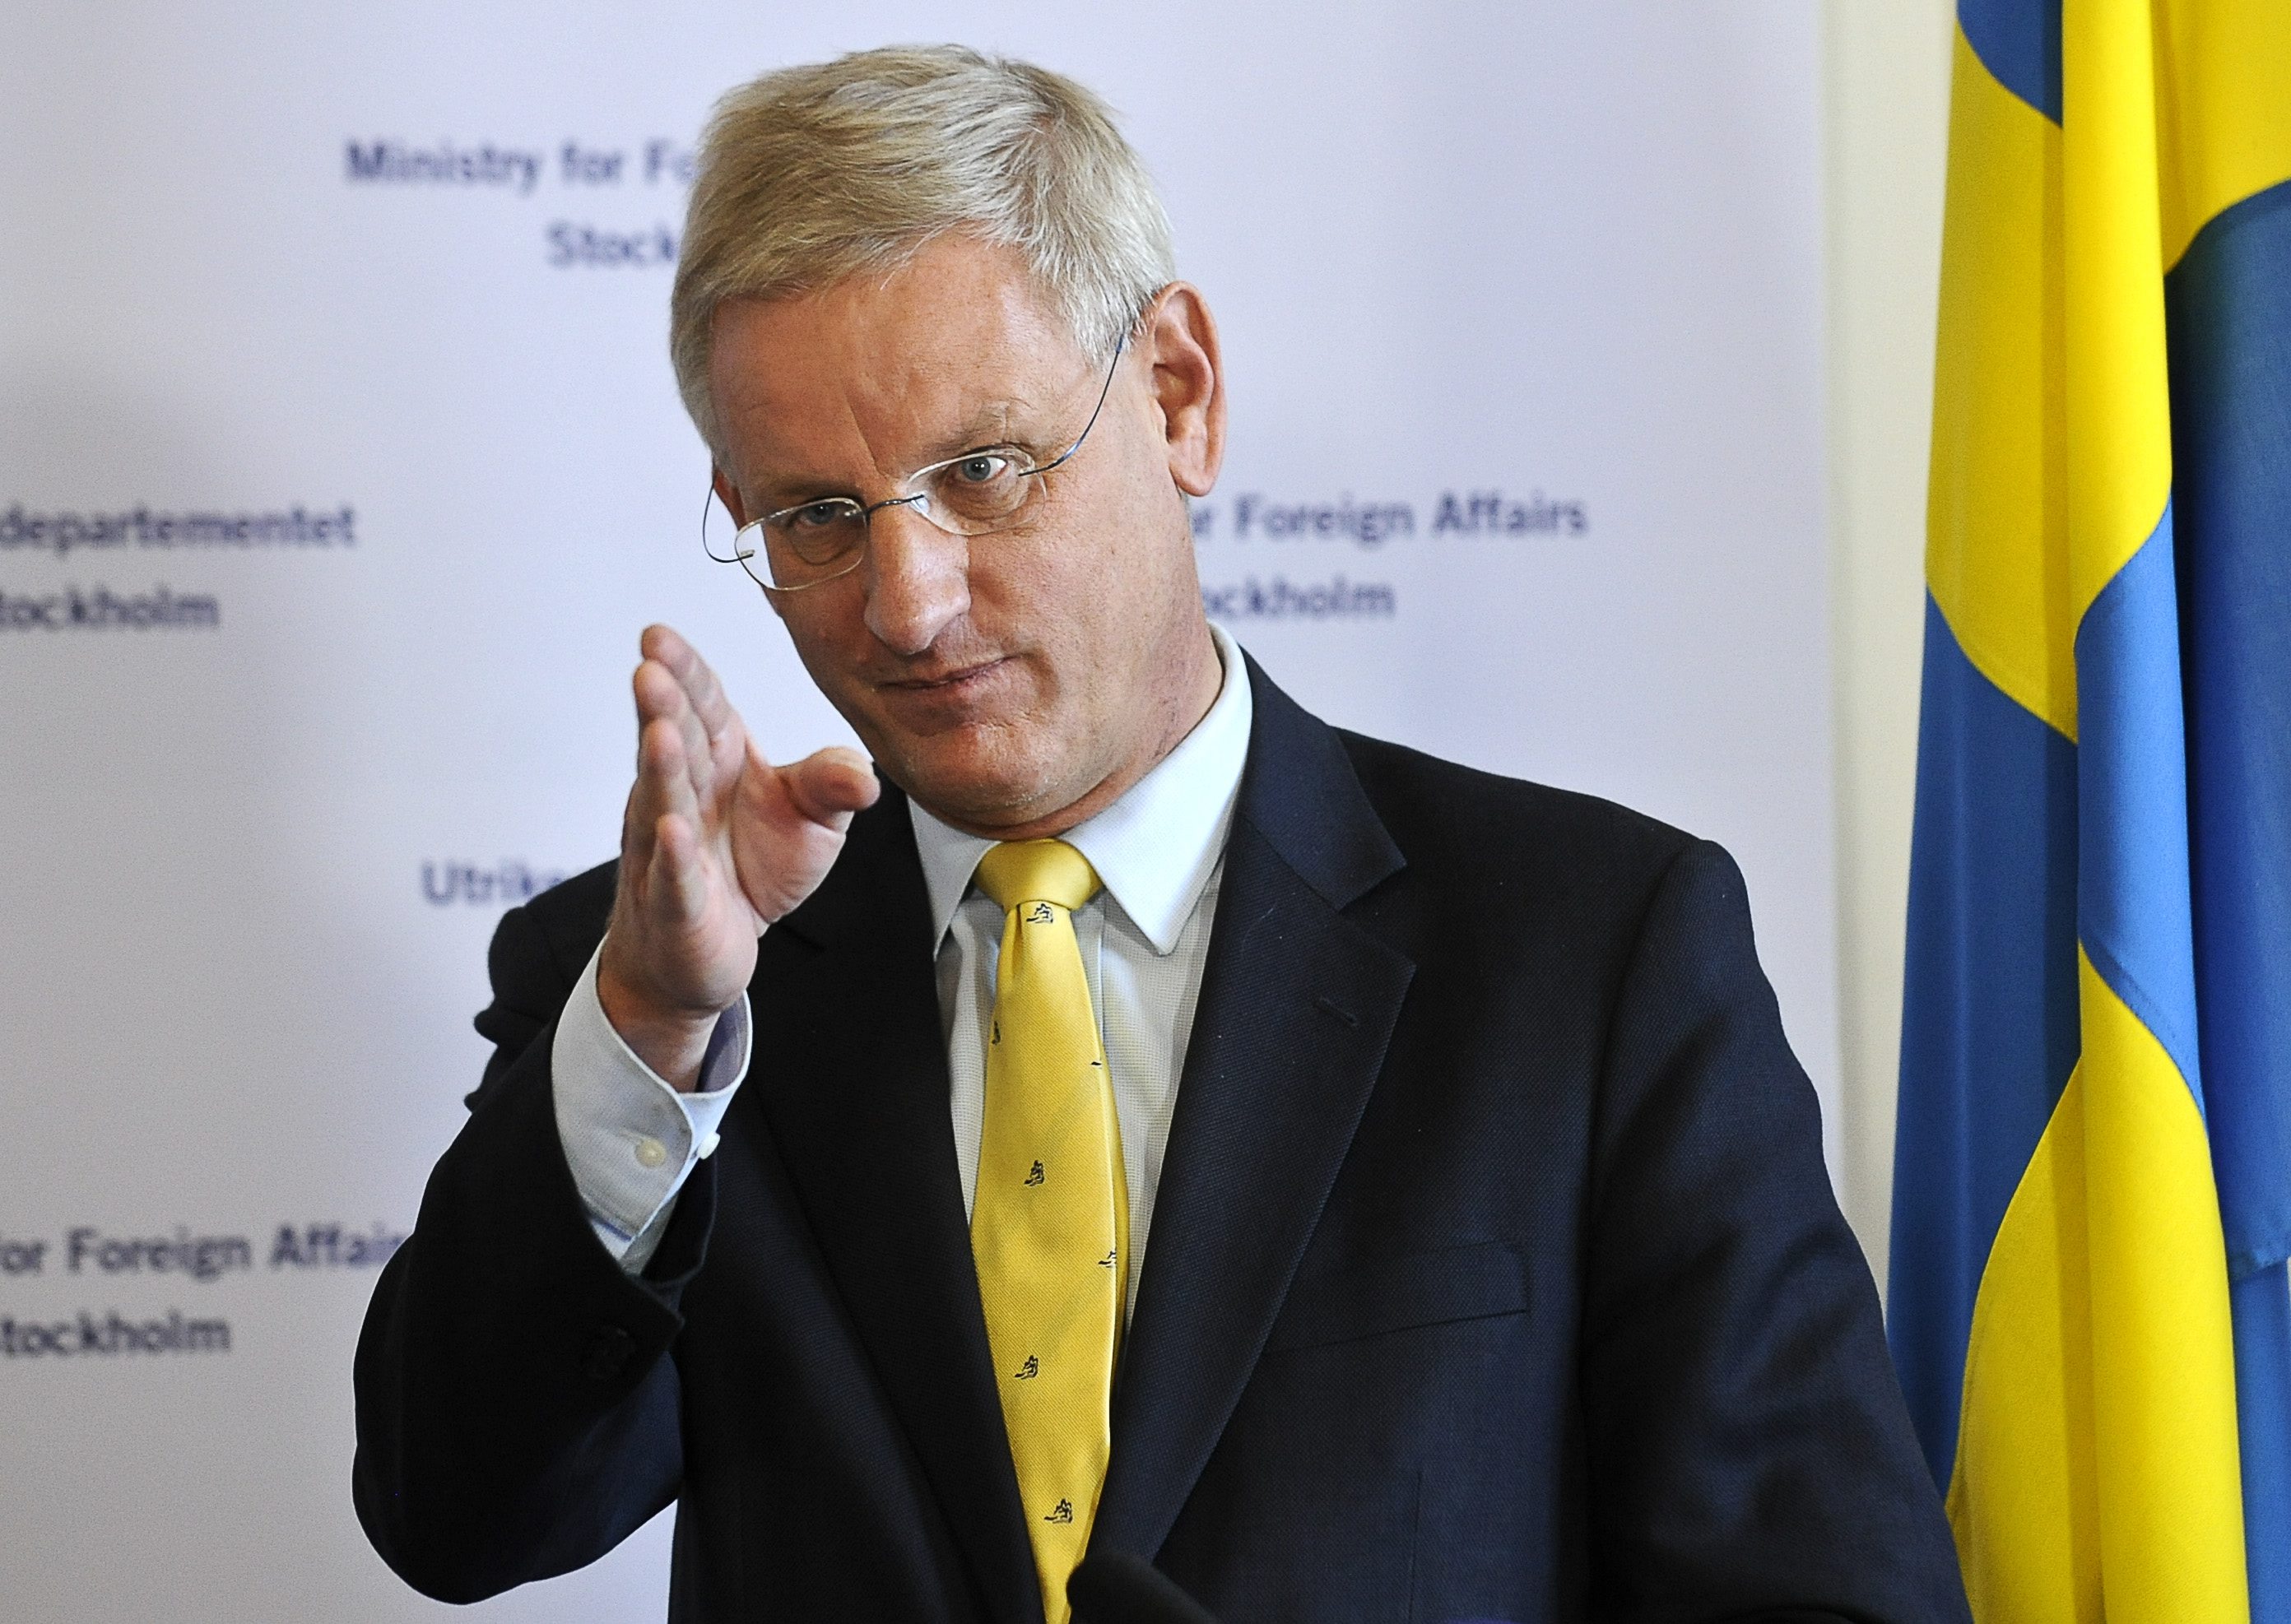 Carl Bildt blev nyligen utsedd till Sveriges roligaste minister av tevekanalen Comedy Central.